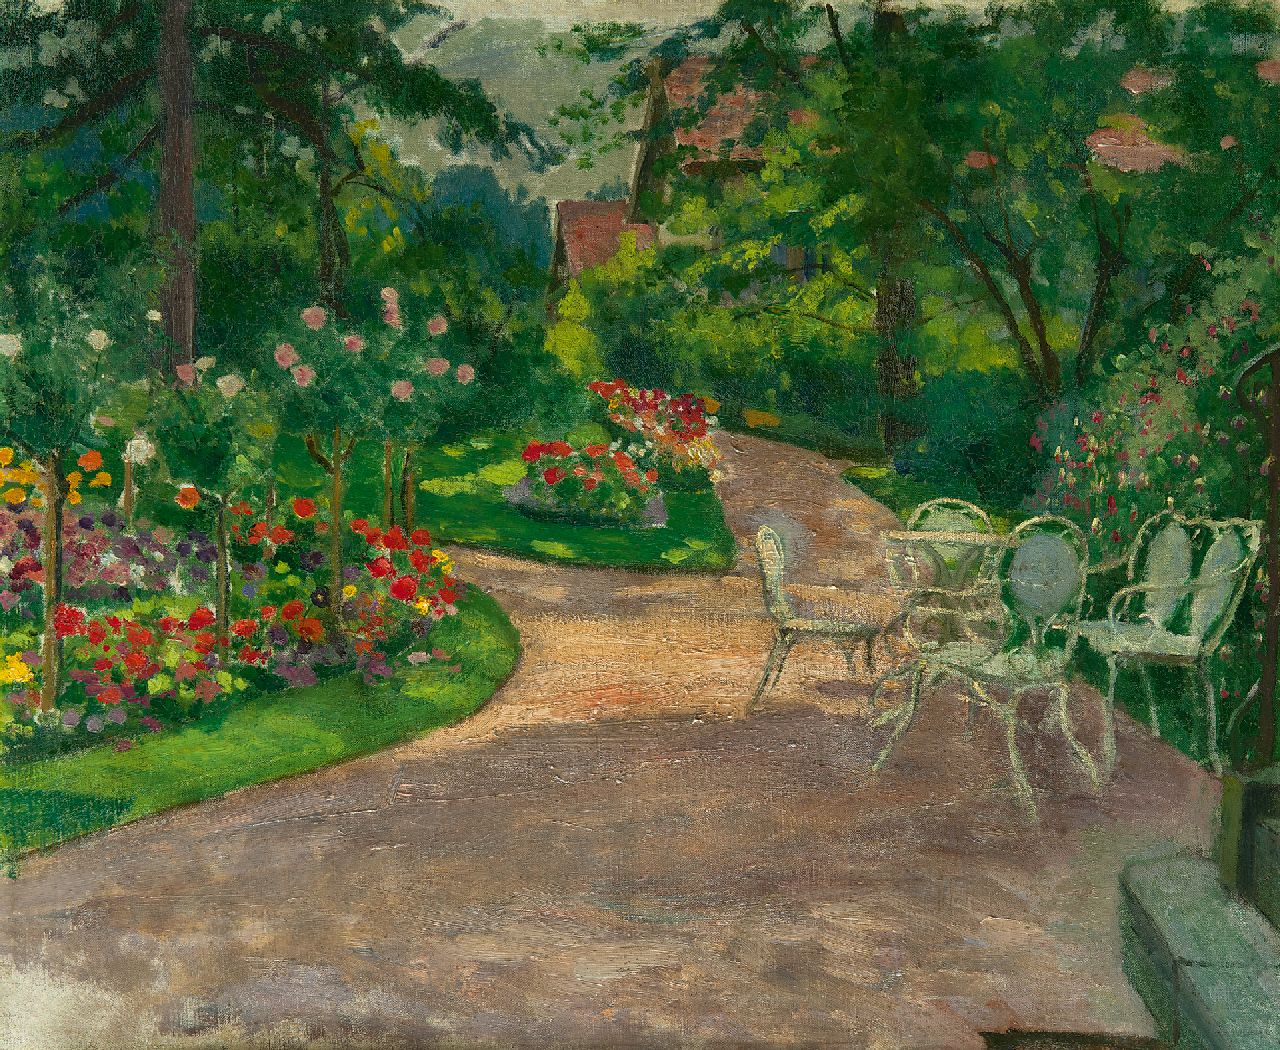 Sachsen M.M.A. von | Mathilde Marie Auguste von Sachsen, Garten im Sommer, Öl auf Leinwand 46,3 x 56,2 cm